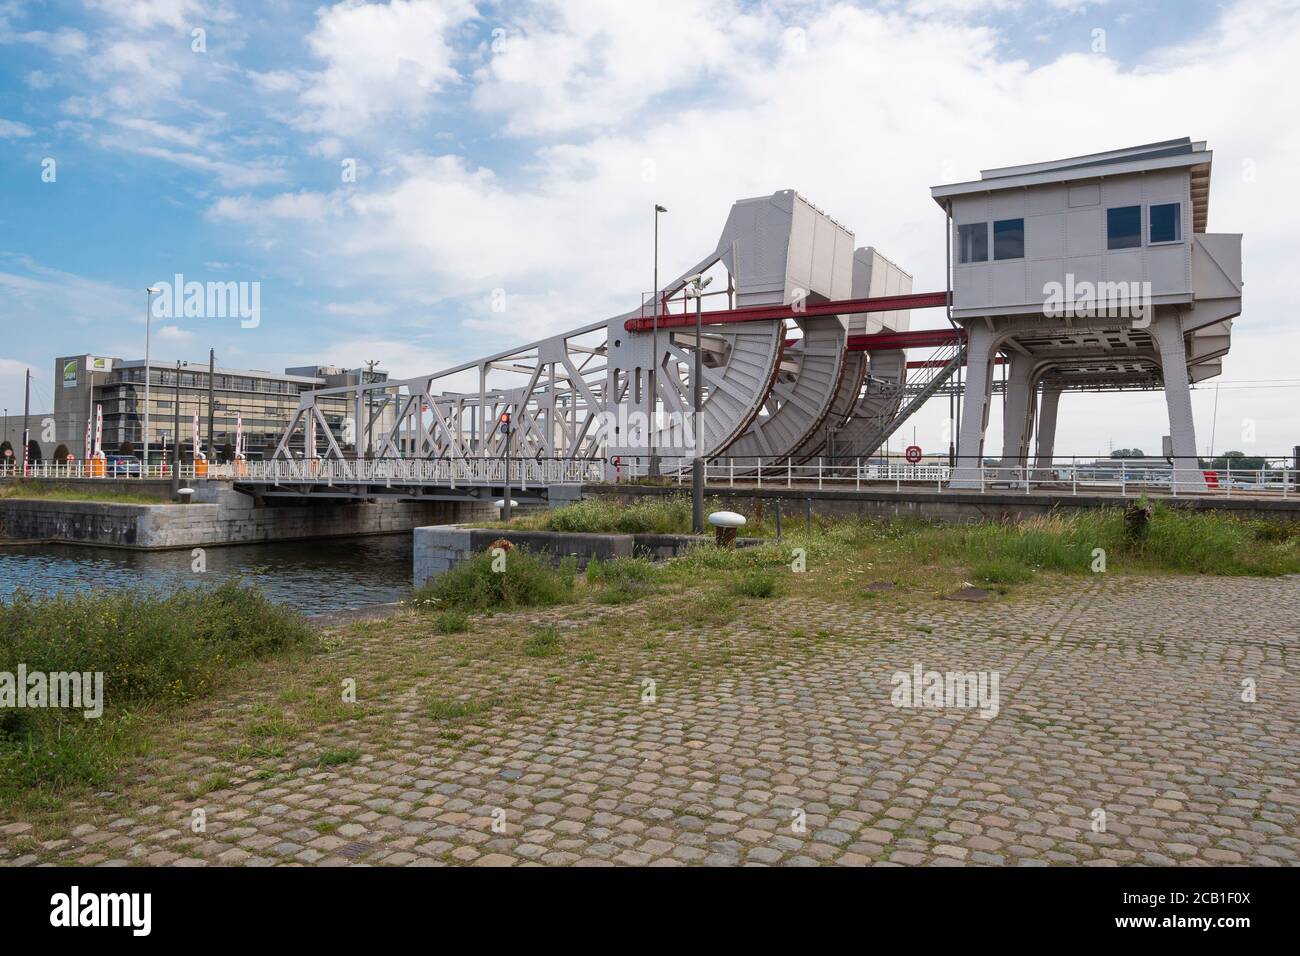 Anvers, Belgique, le 19 juillet 2020, le Mexicobrug est un pont dans la zone portuaire d'Anvers, sur la rive droite de l'Escaut Banque D'Images